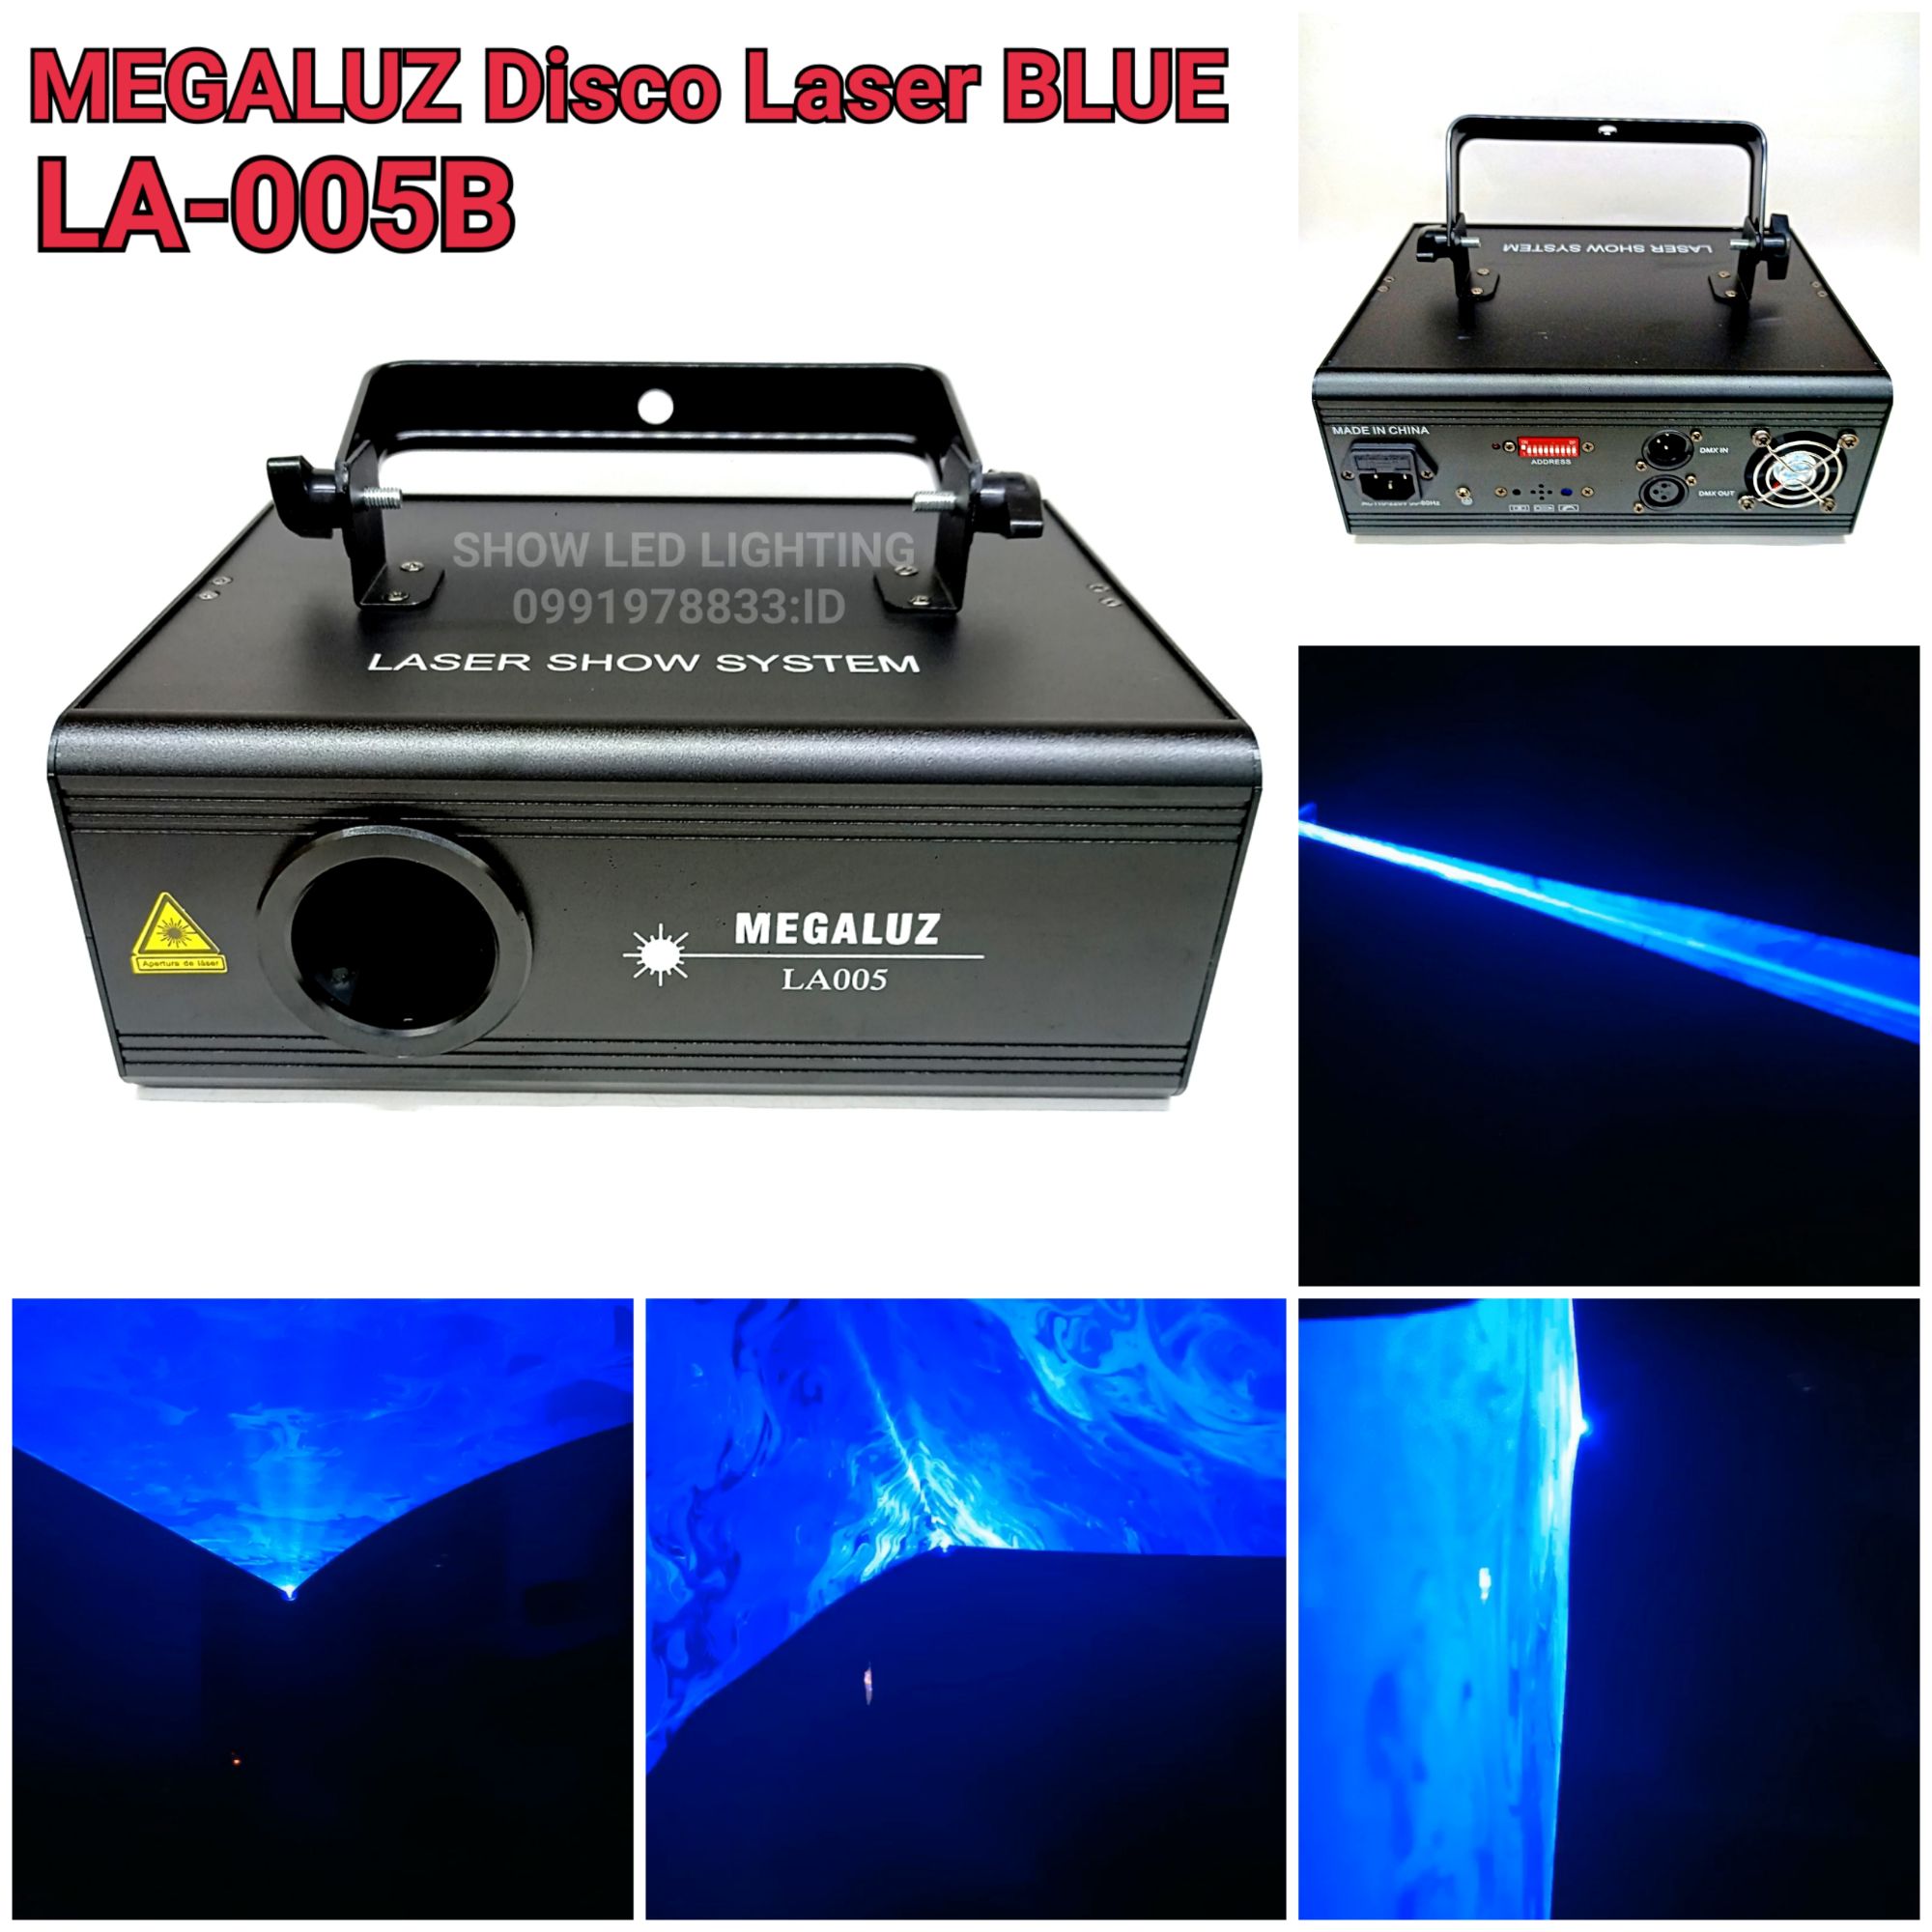 ไฟดิสโก้เทค เลเซอร์ลายเส้น สีน้ำเงิน Megaluz LA005B disco blue laser light ไฟเลเซอร์ดิสโก้ ไฟดิสโก้ ดิสโก้เธค ไฟปาตี้